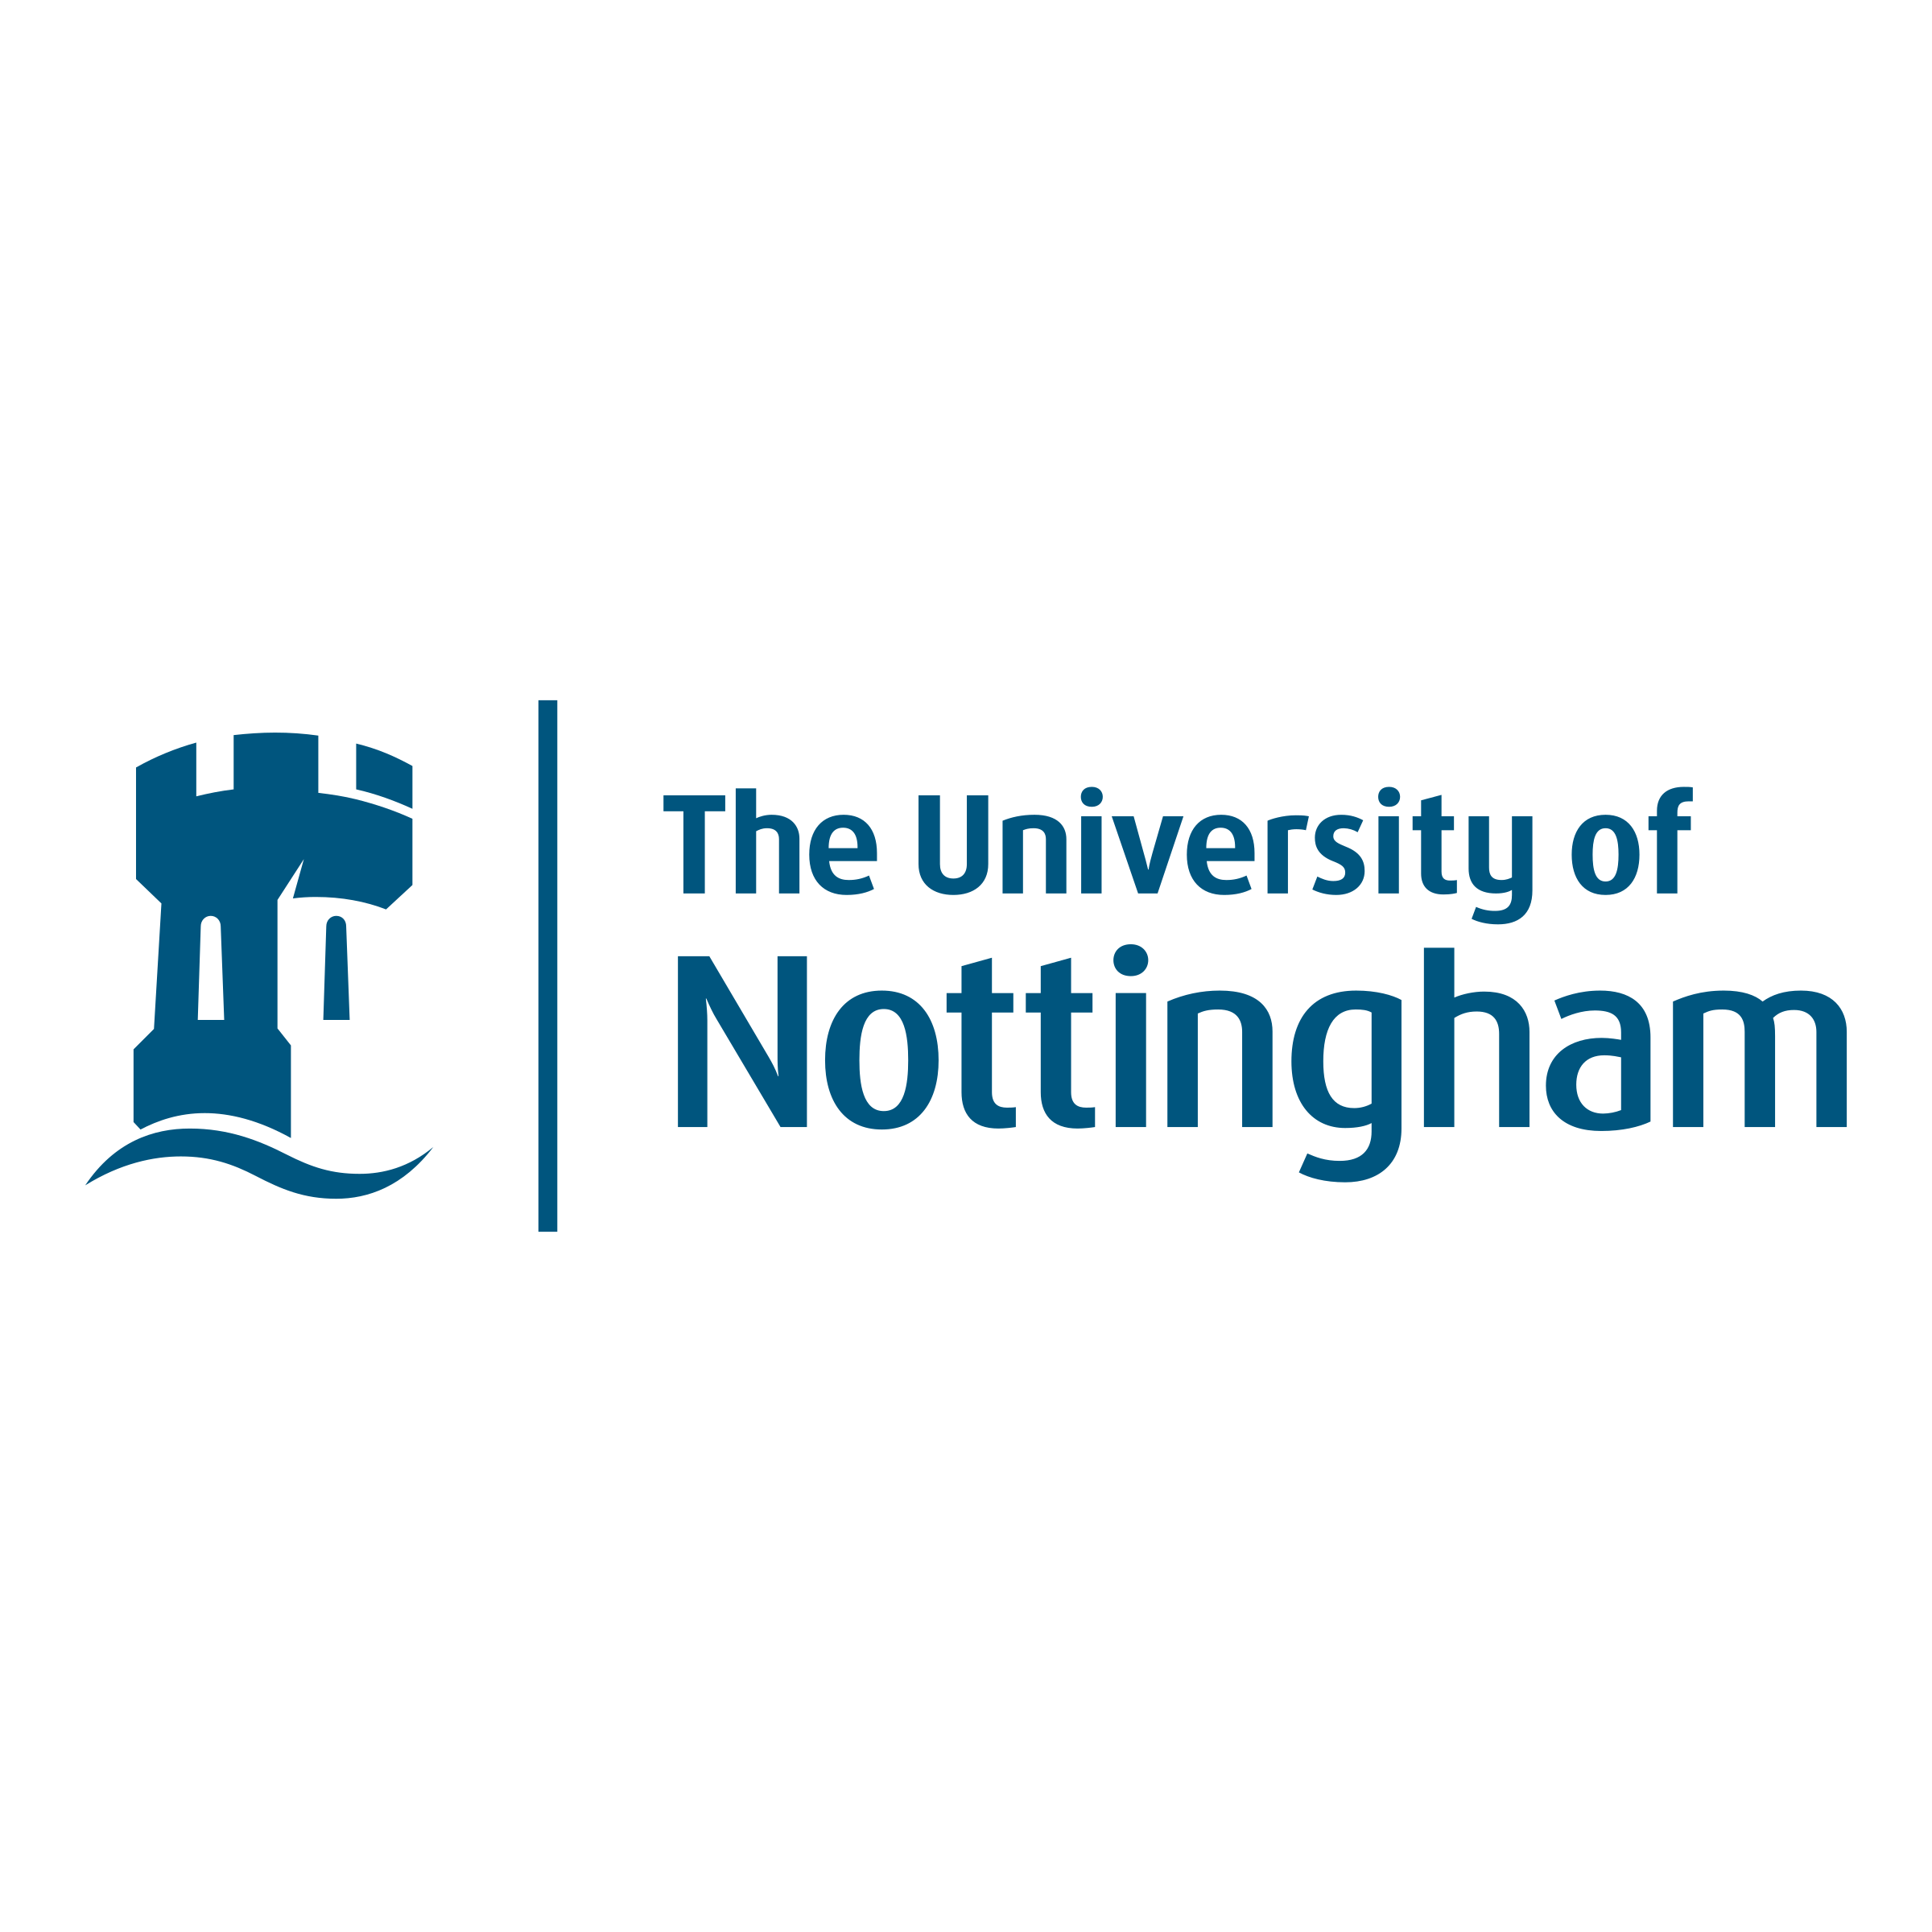 Recruitment: Apply For University of Nottingham Recruitment 2022